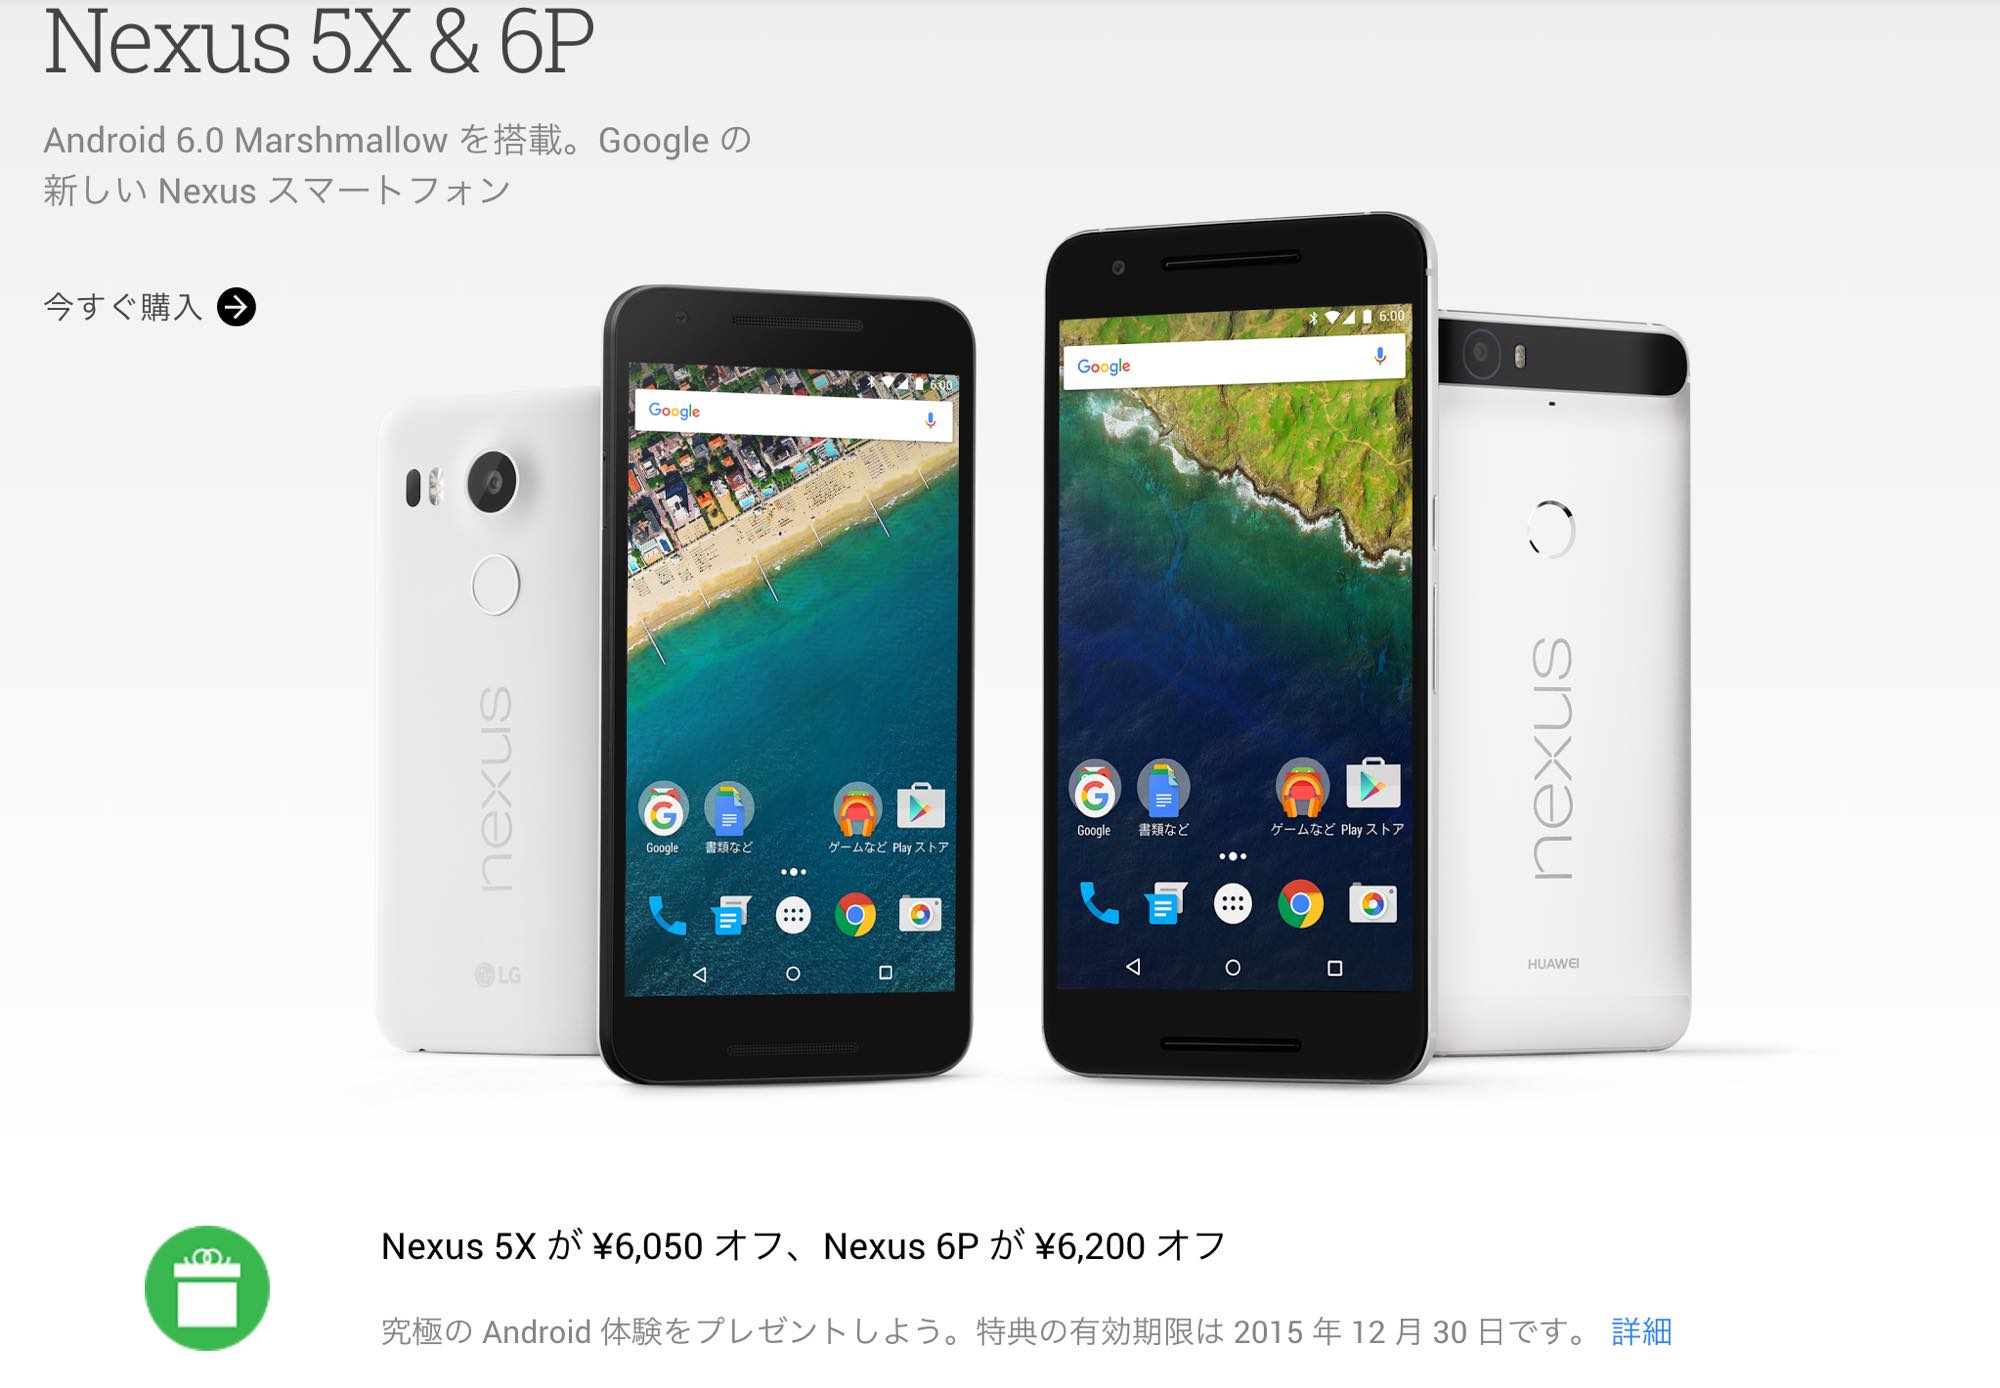 ソフトバンク版 Nexus 6pをsimロック解除して格安simで運用する方法 赤